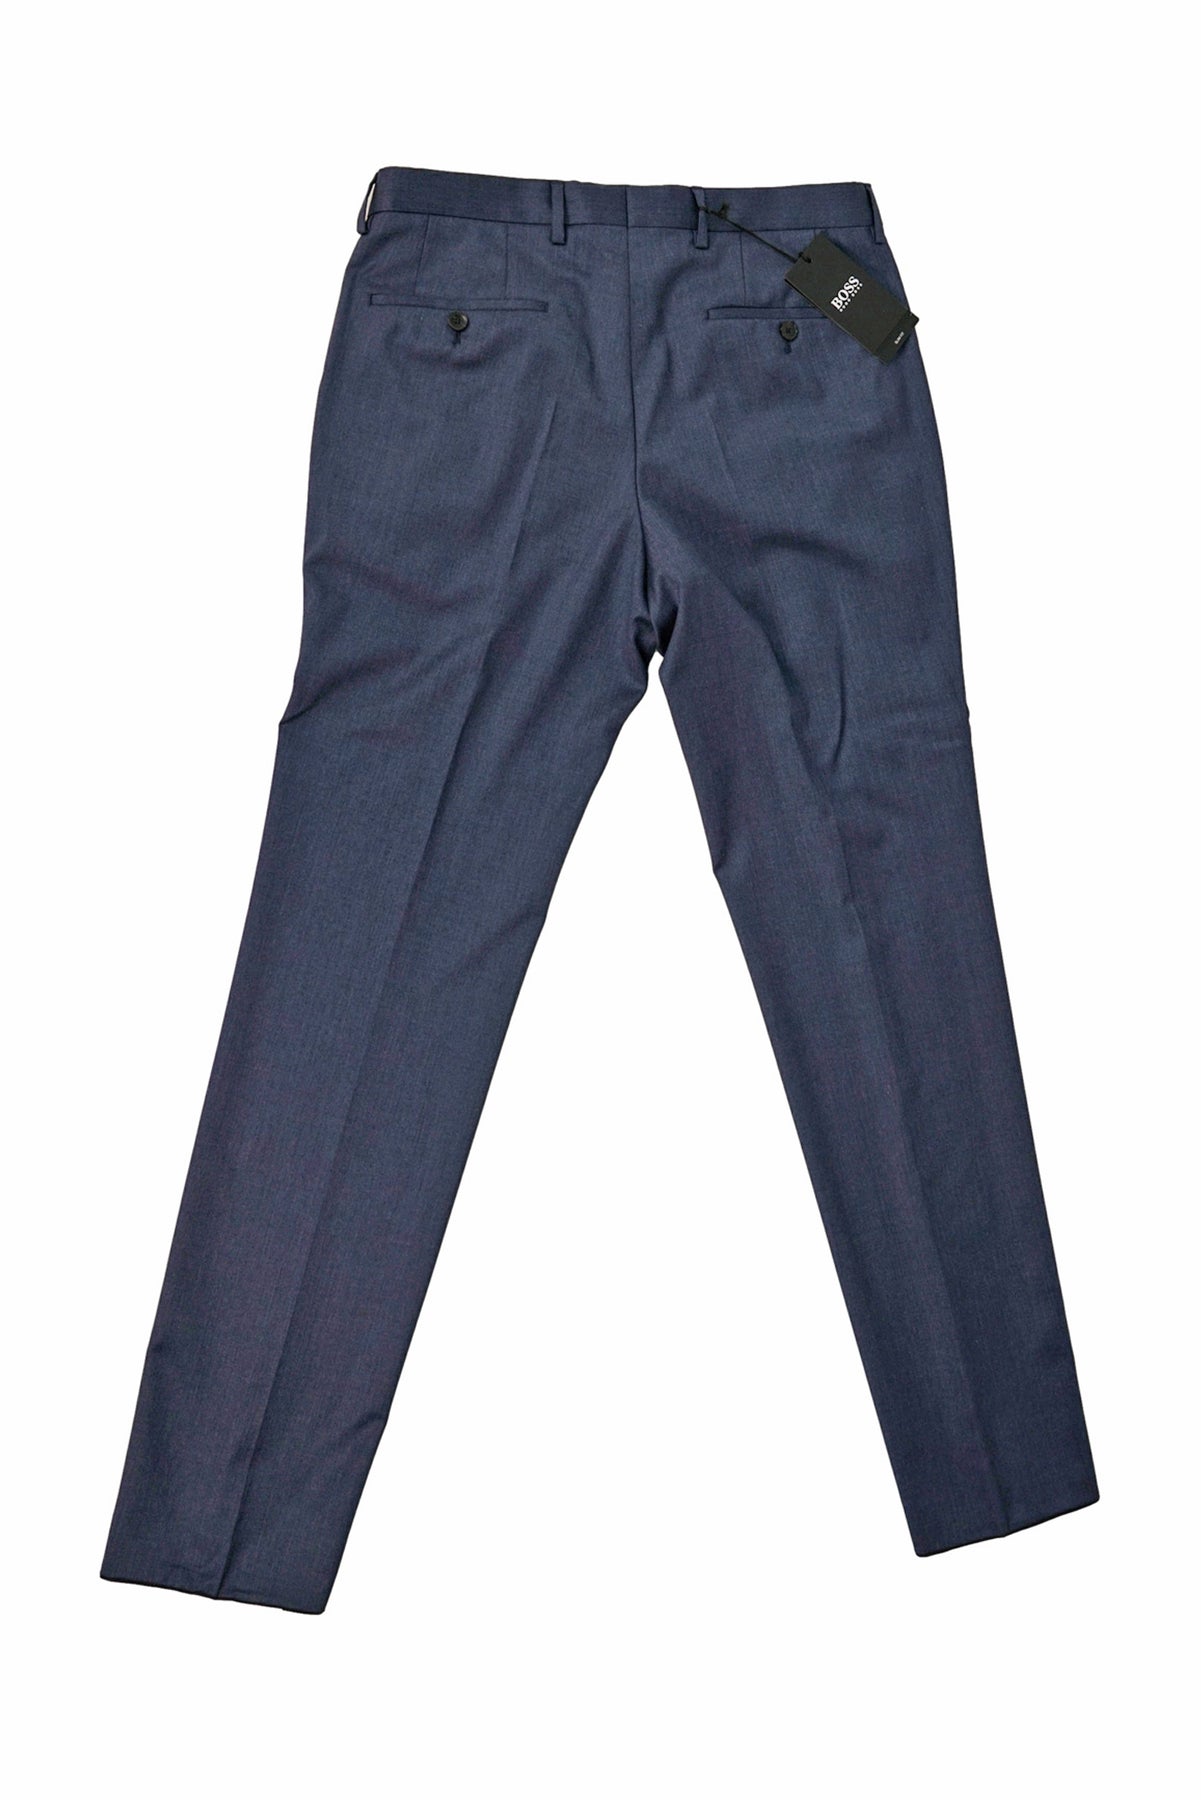 Condor Cipher Urban Tactical Jeans Blue Black Size 38W x 34L – Surplus  Provisions